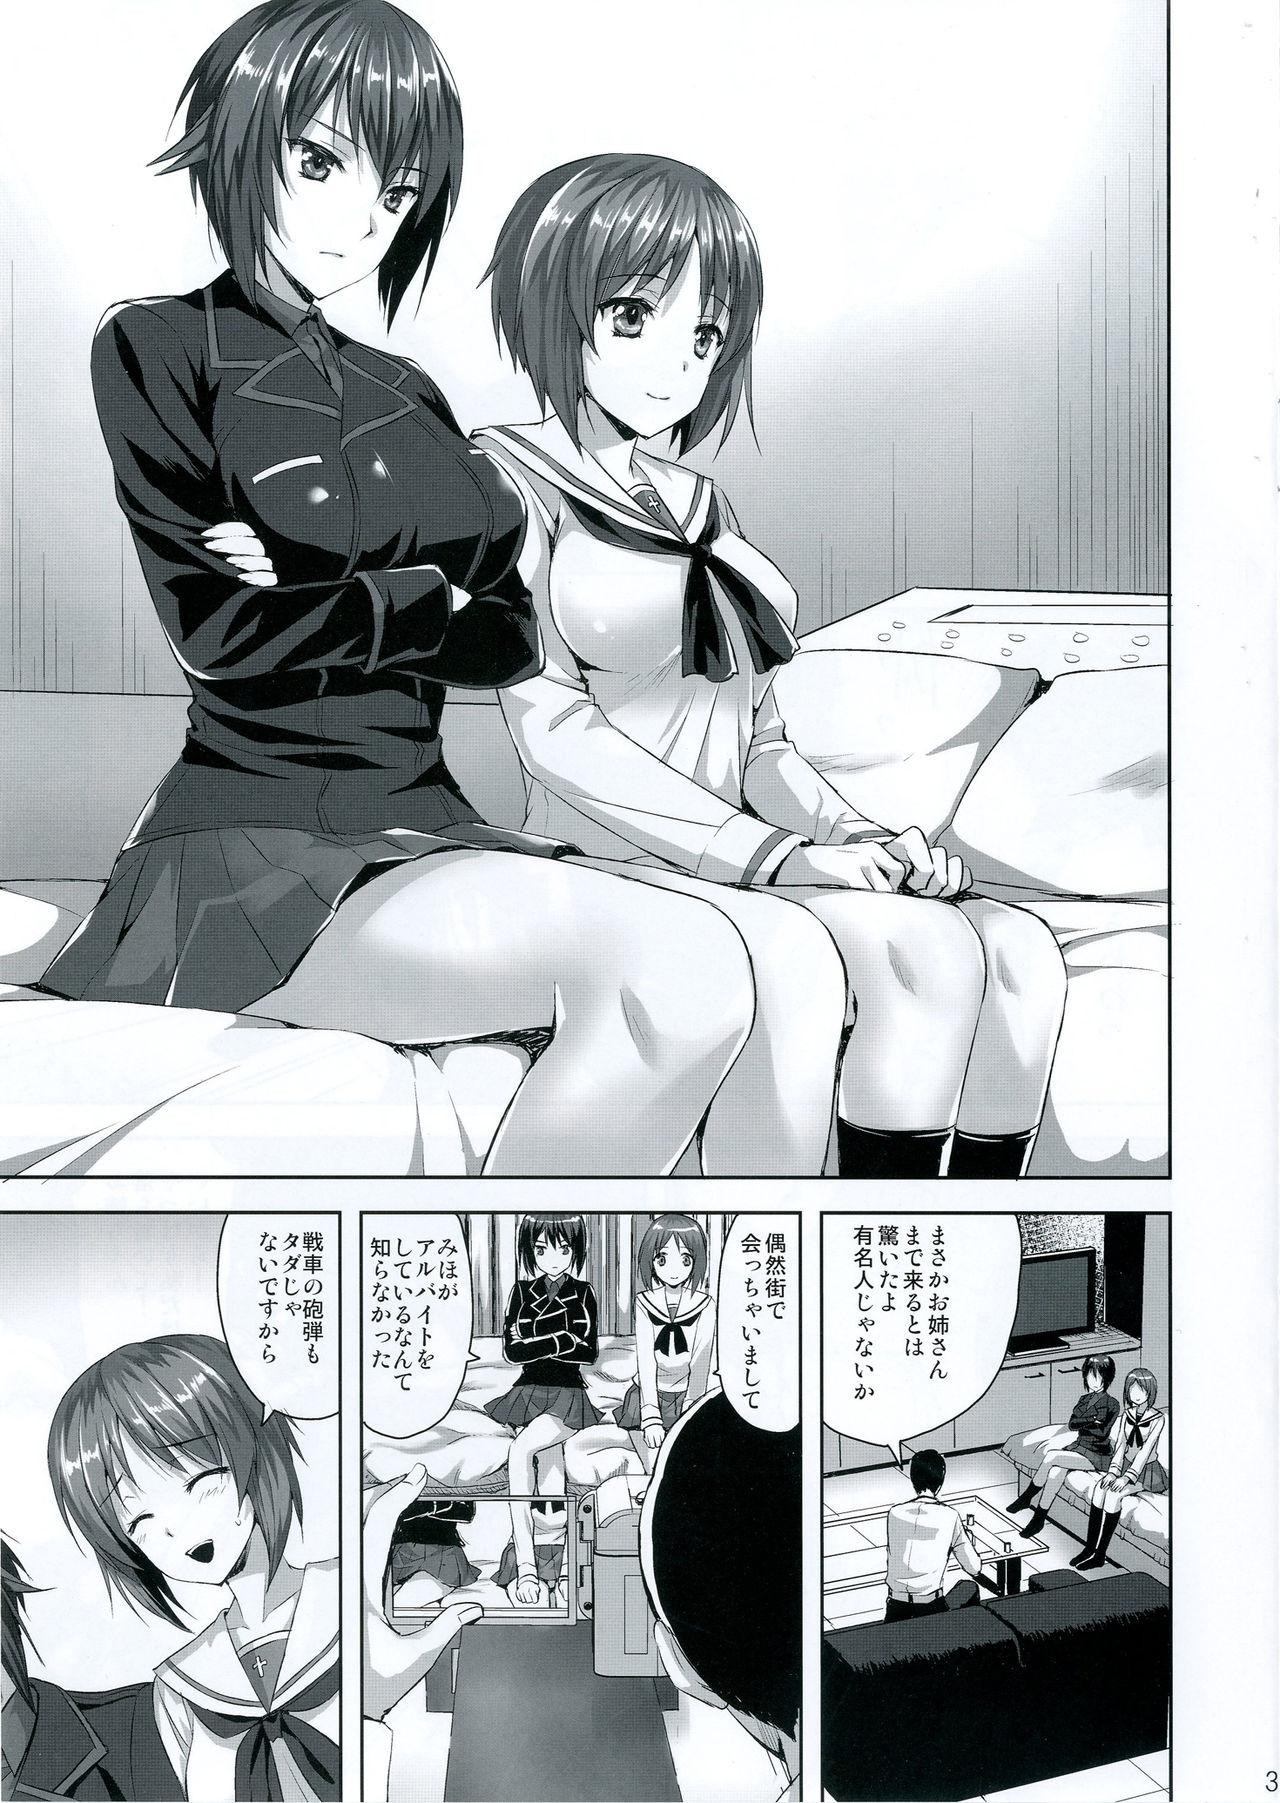 Buttfucking Sensha no Houdan mo Tada janai desukara - Girls und panzer Submissive - Page 2